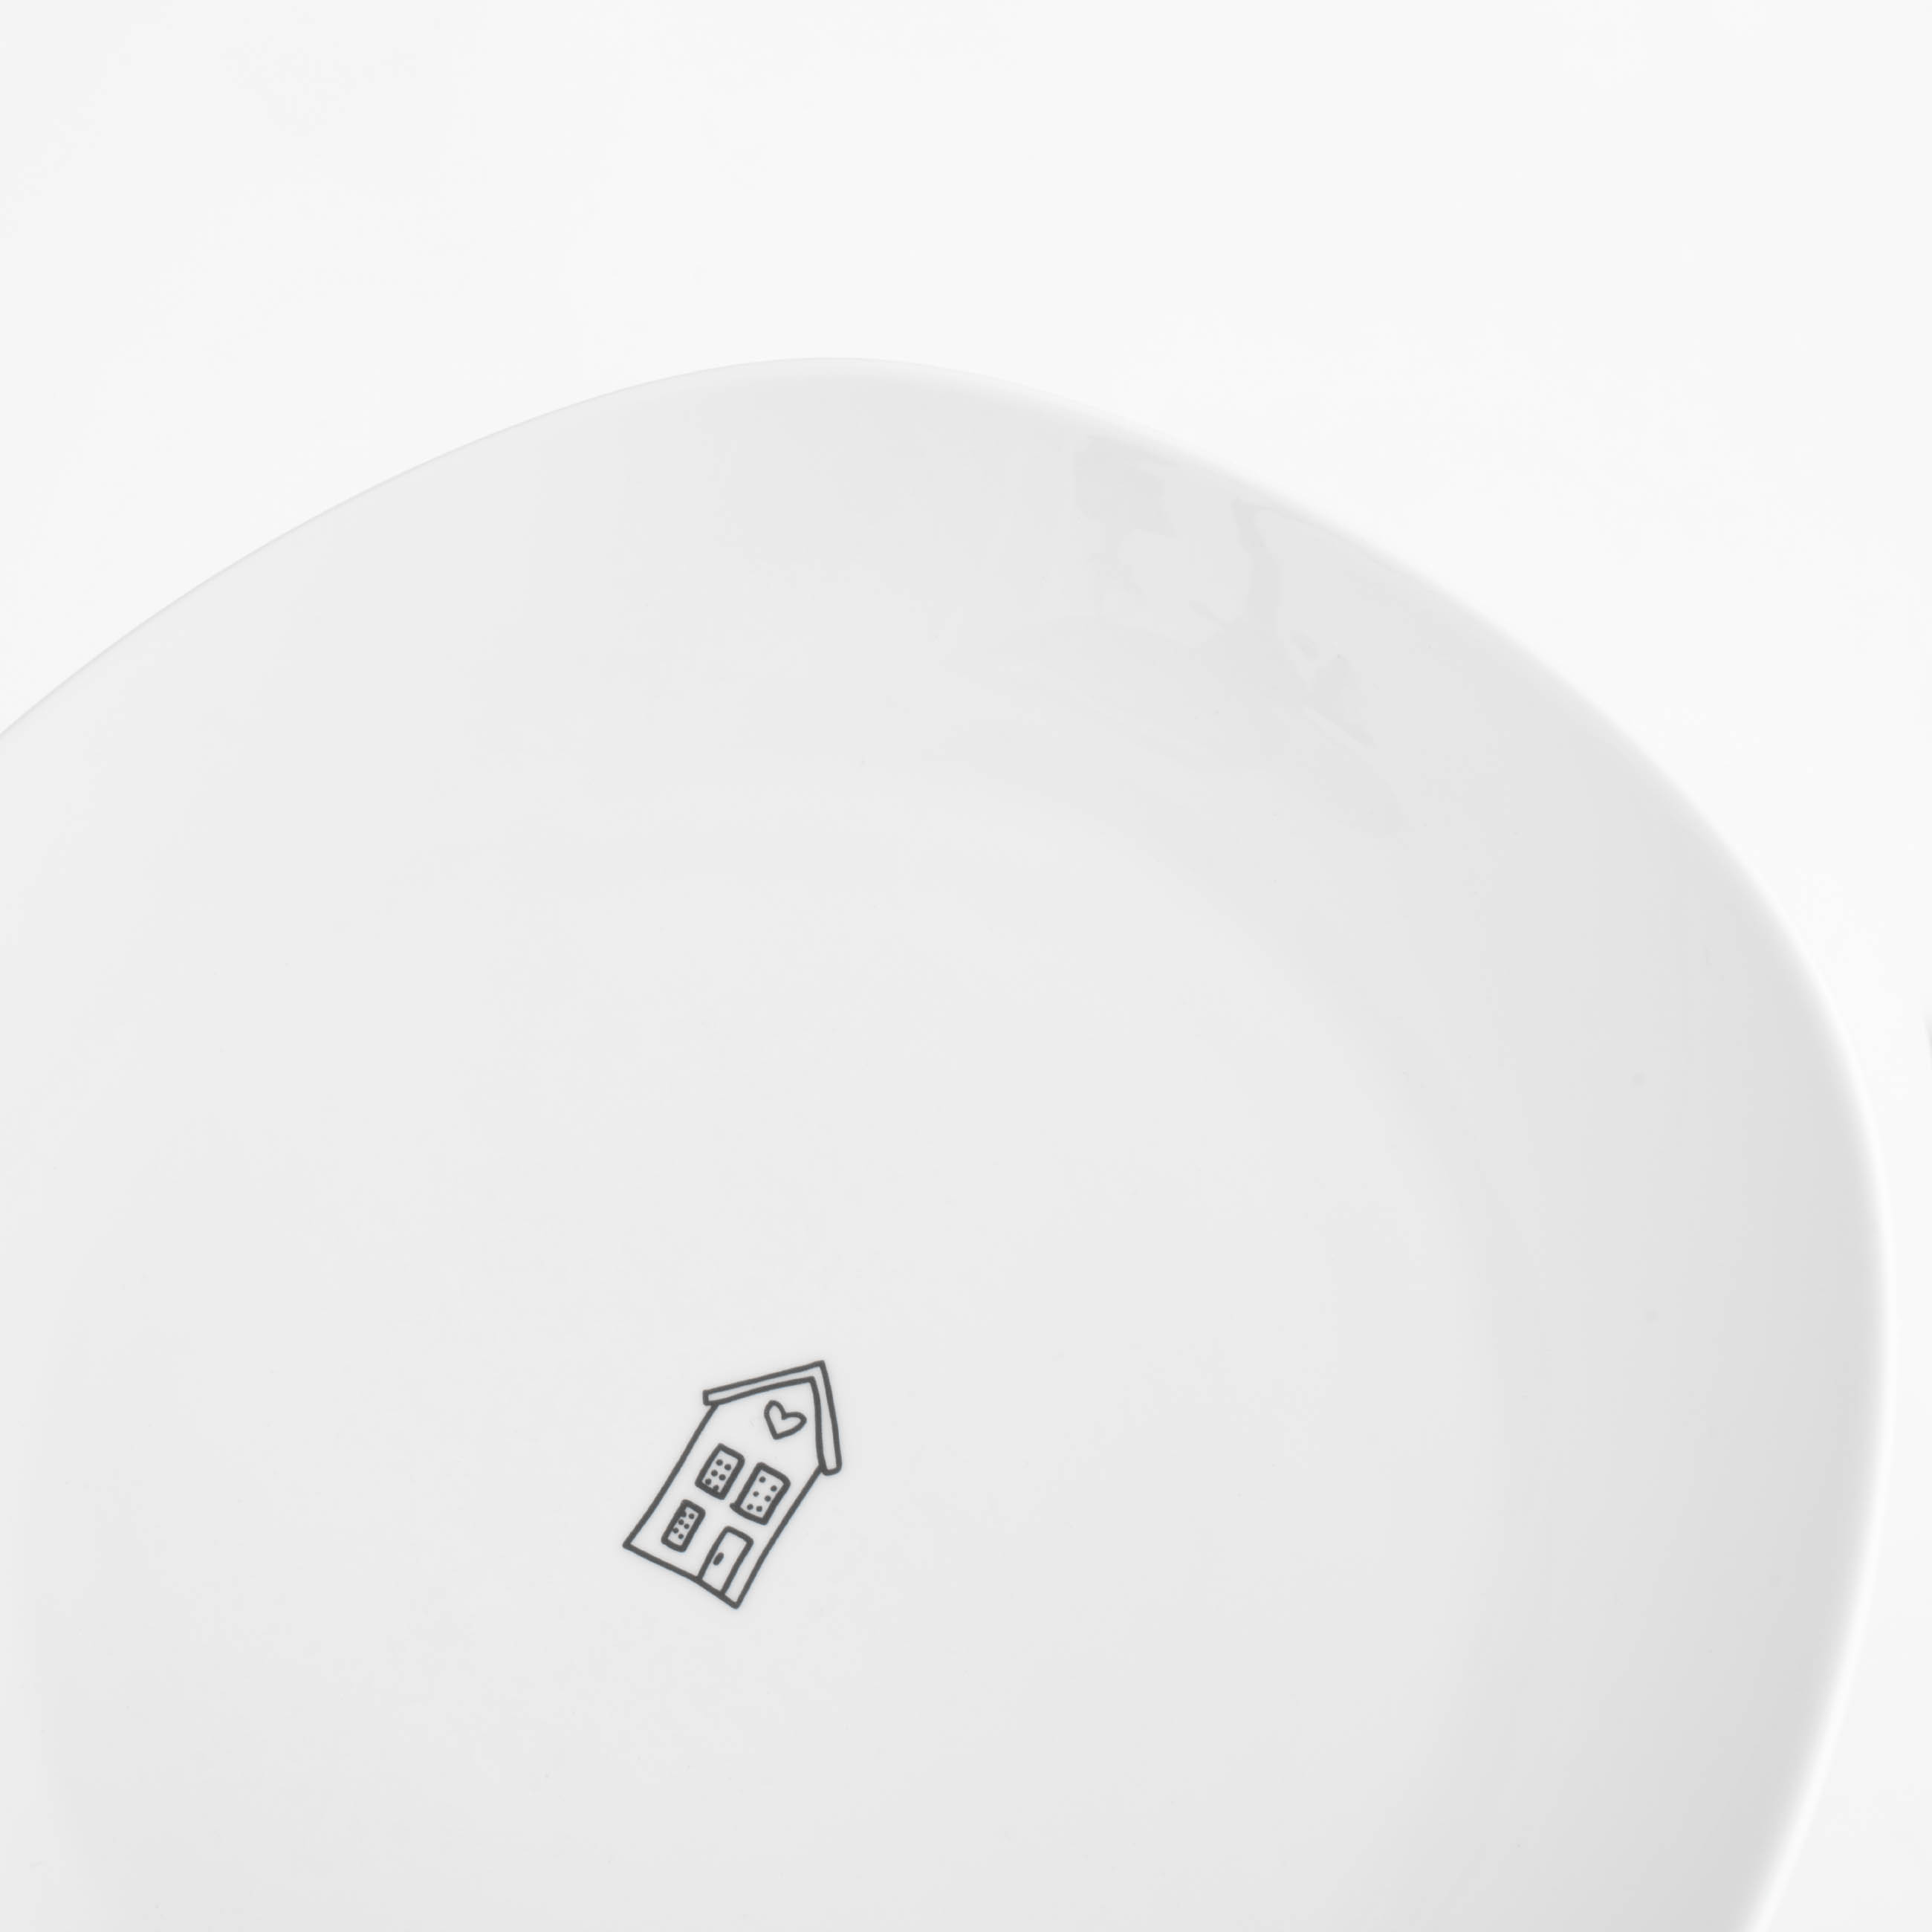 Тарелка обеденная, 26 см, фарфор P, белая, Дом, Amour изображение № 5